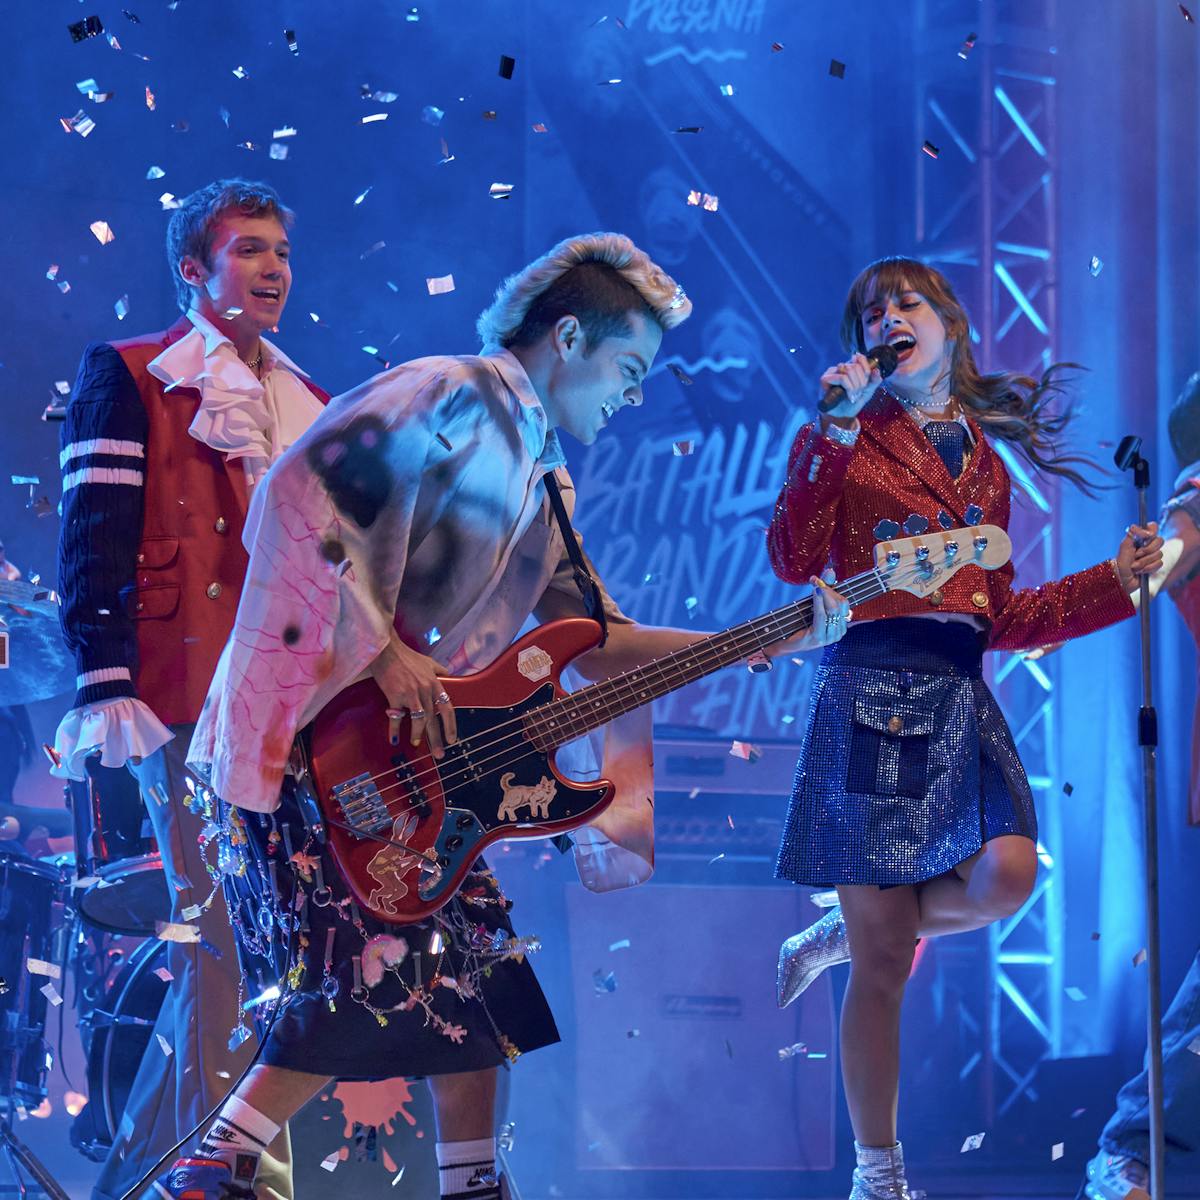 El elenco de Rebelde rockea en un escenario lleno de confeti.